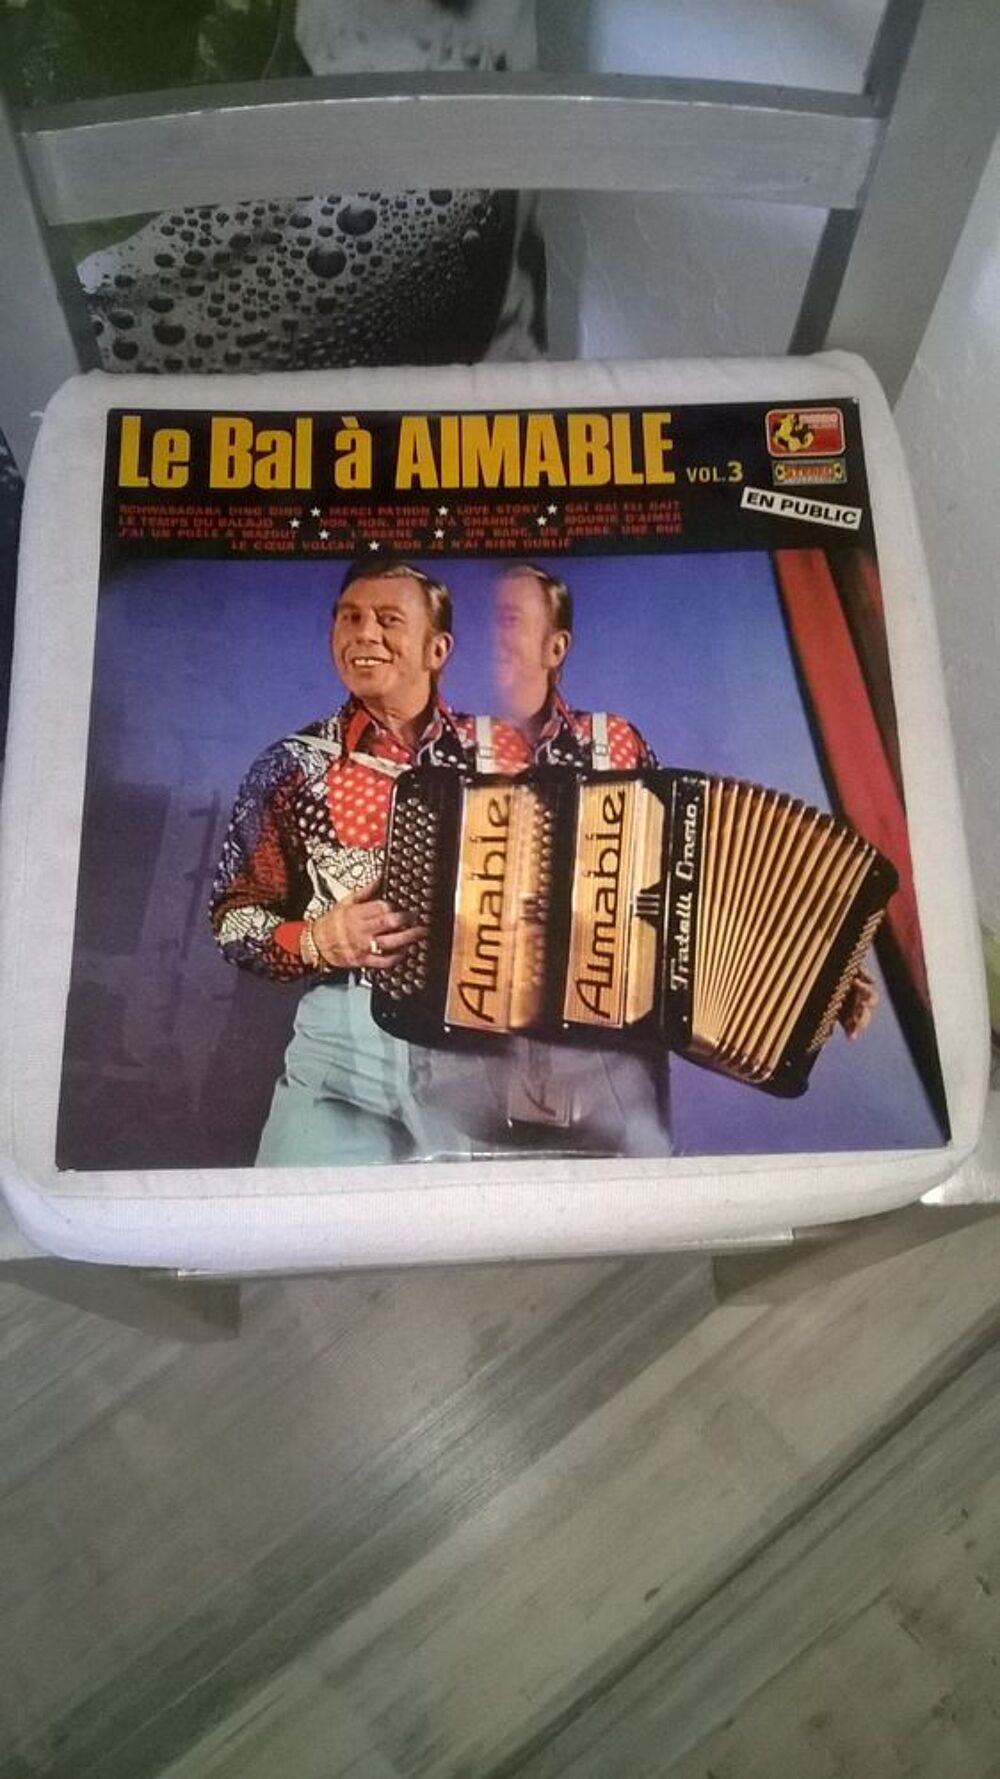 Vinyle Aimable
Le Bal A Aimable Vol. 3
Excellent etat
En CD et vinyles